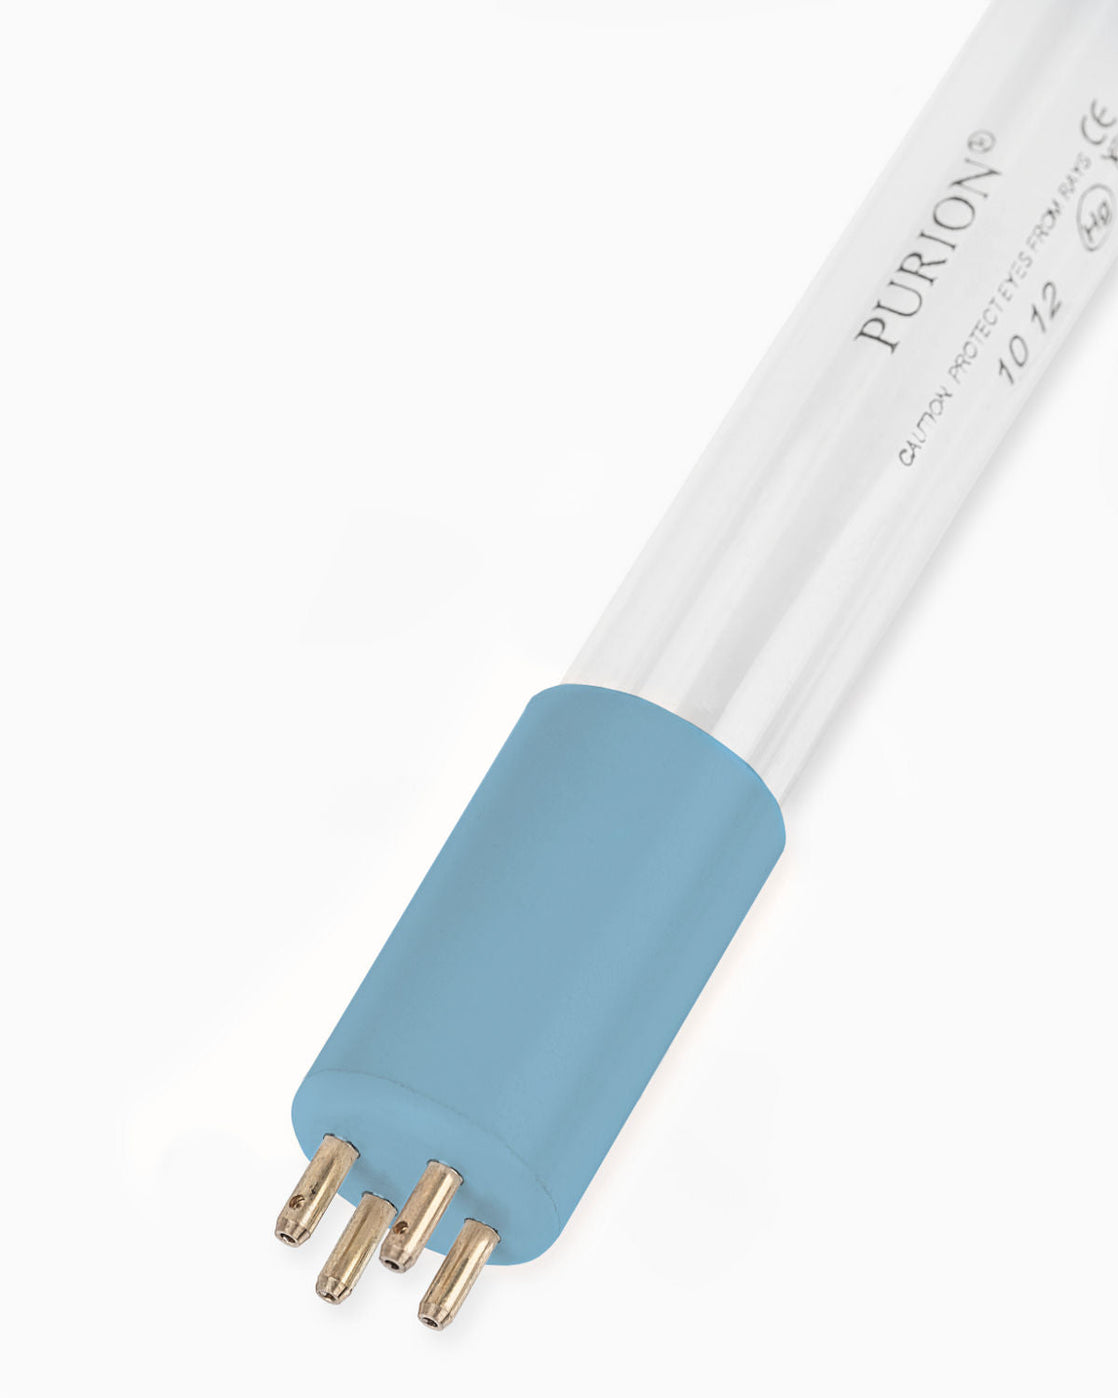 Eine PURION 1000 110 - 240 V AC OPD-Blaulichtröhre auf weißem Hintergrund, die zur Wasserdesinfektion verwendet wird, insbesondere mit dem System der PURION GmbH.